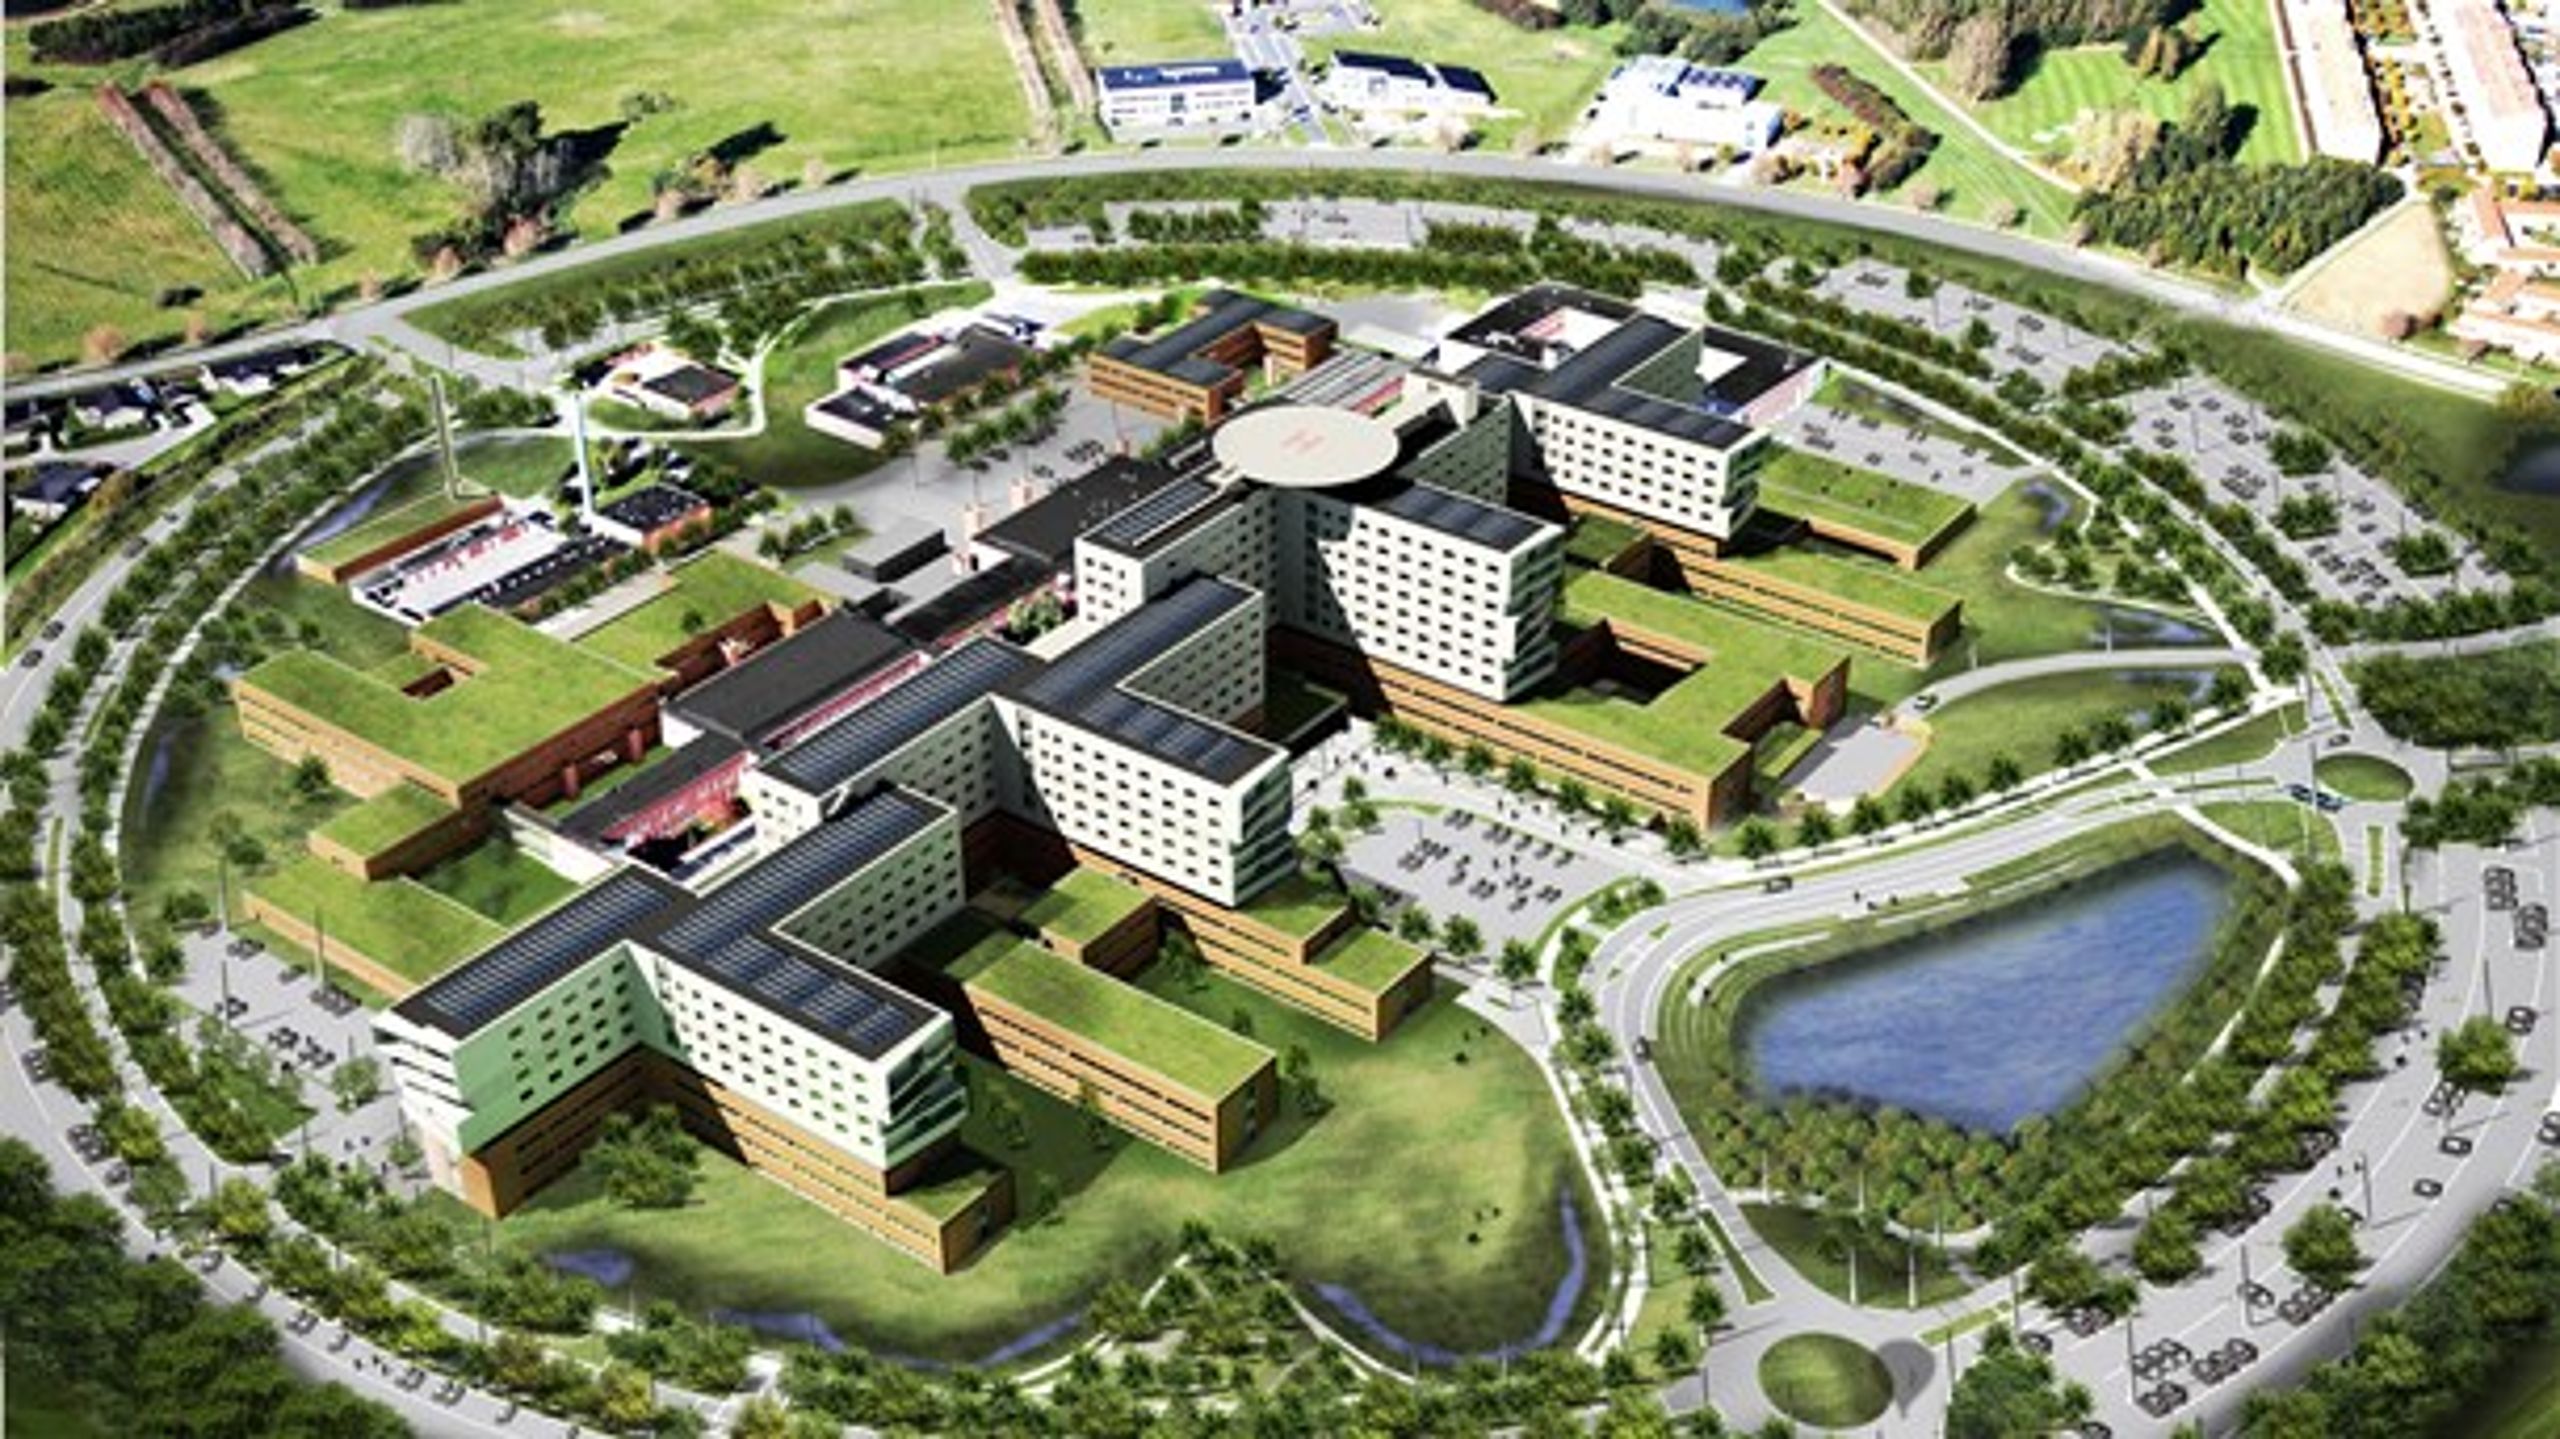 Den nye lægeuddannelse skal placeres i nærheden af det kommende universitetshospital i Køge.